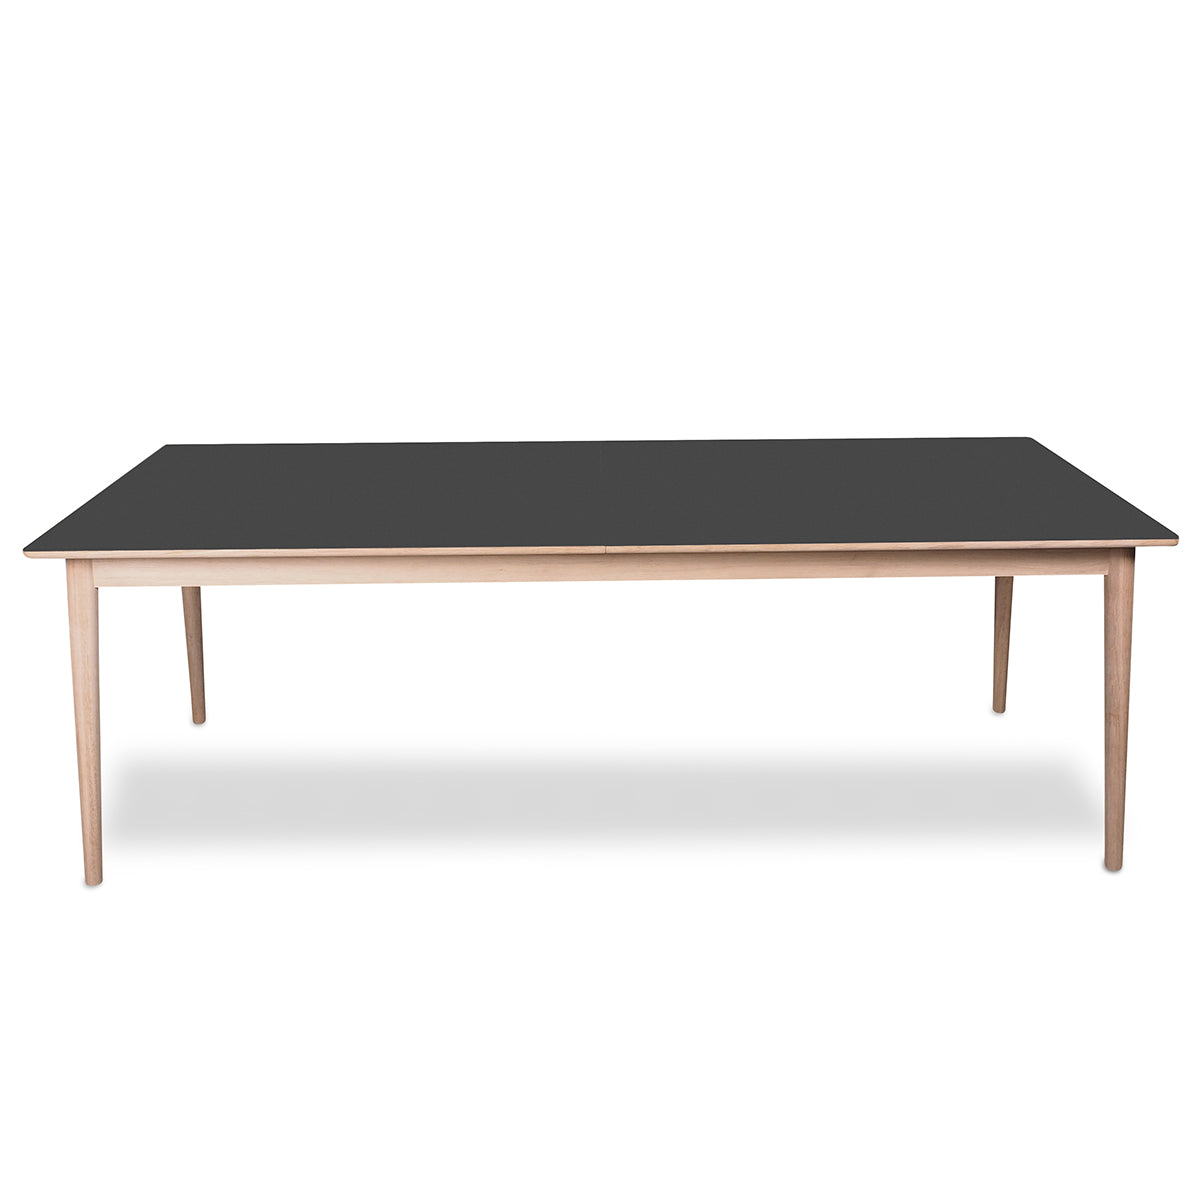 PBJ Designhouse Sesame spisebord i hvidpigmenteret lakeret eg med grå nano laminat bordplade.